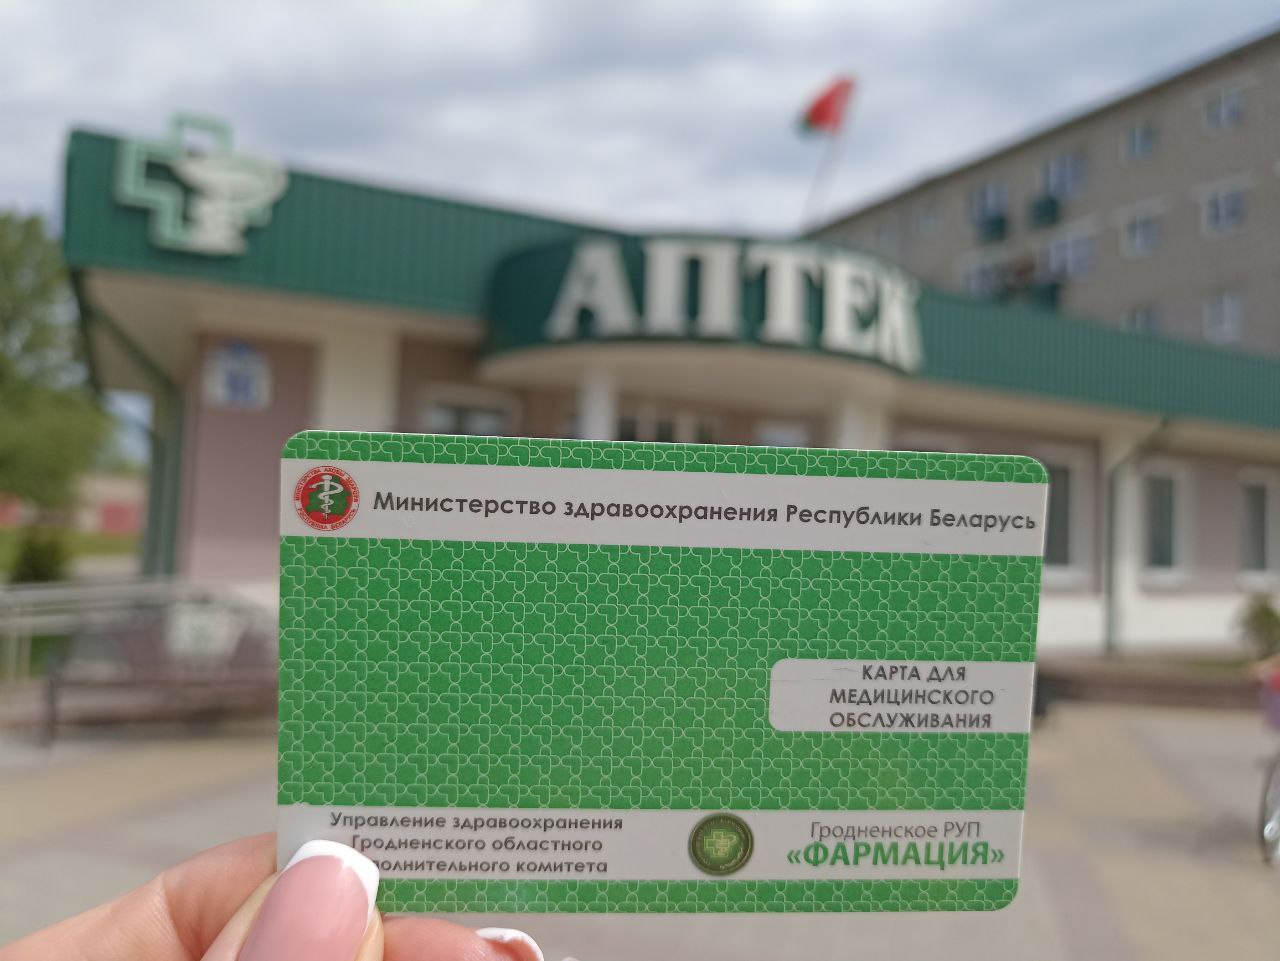 Аптеки РУП «Фармация» предоставляют скидки по карте «Для медицинского обслуживания»